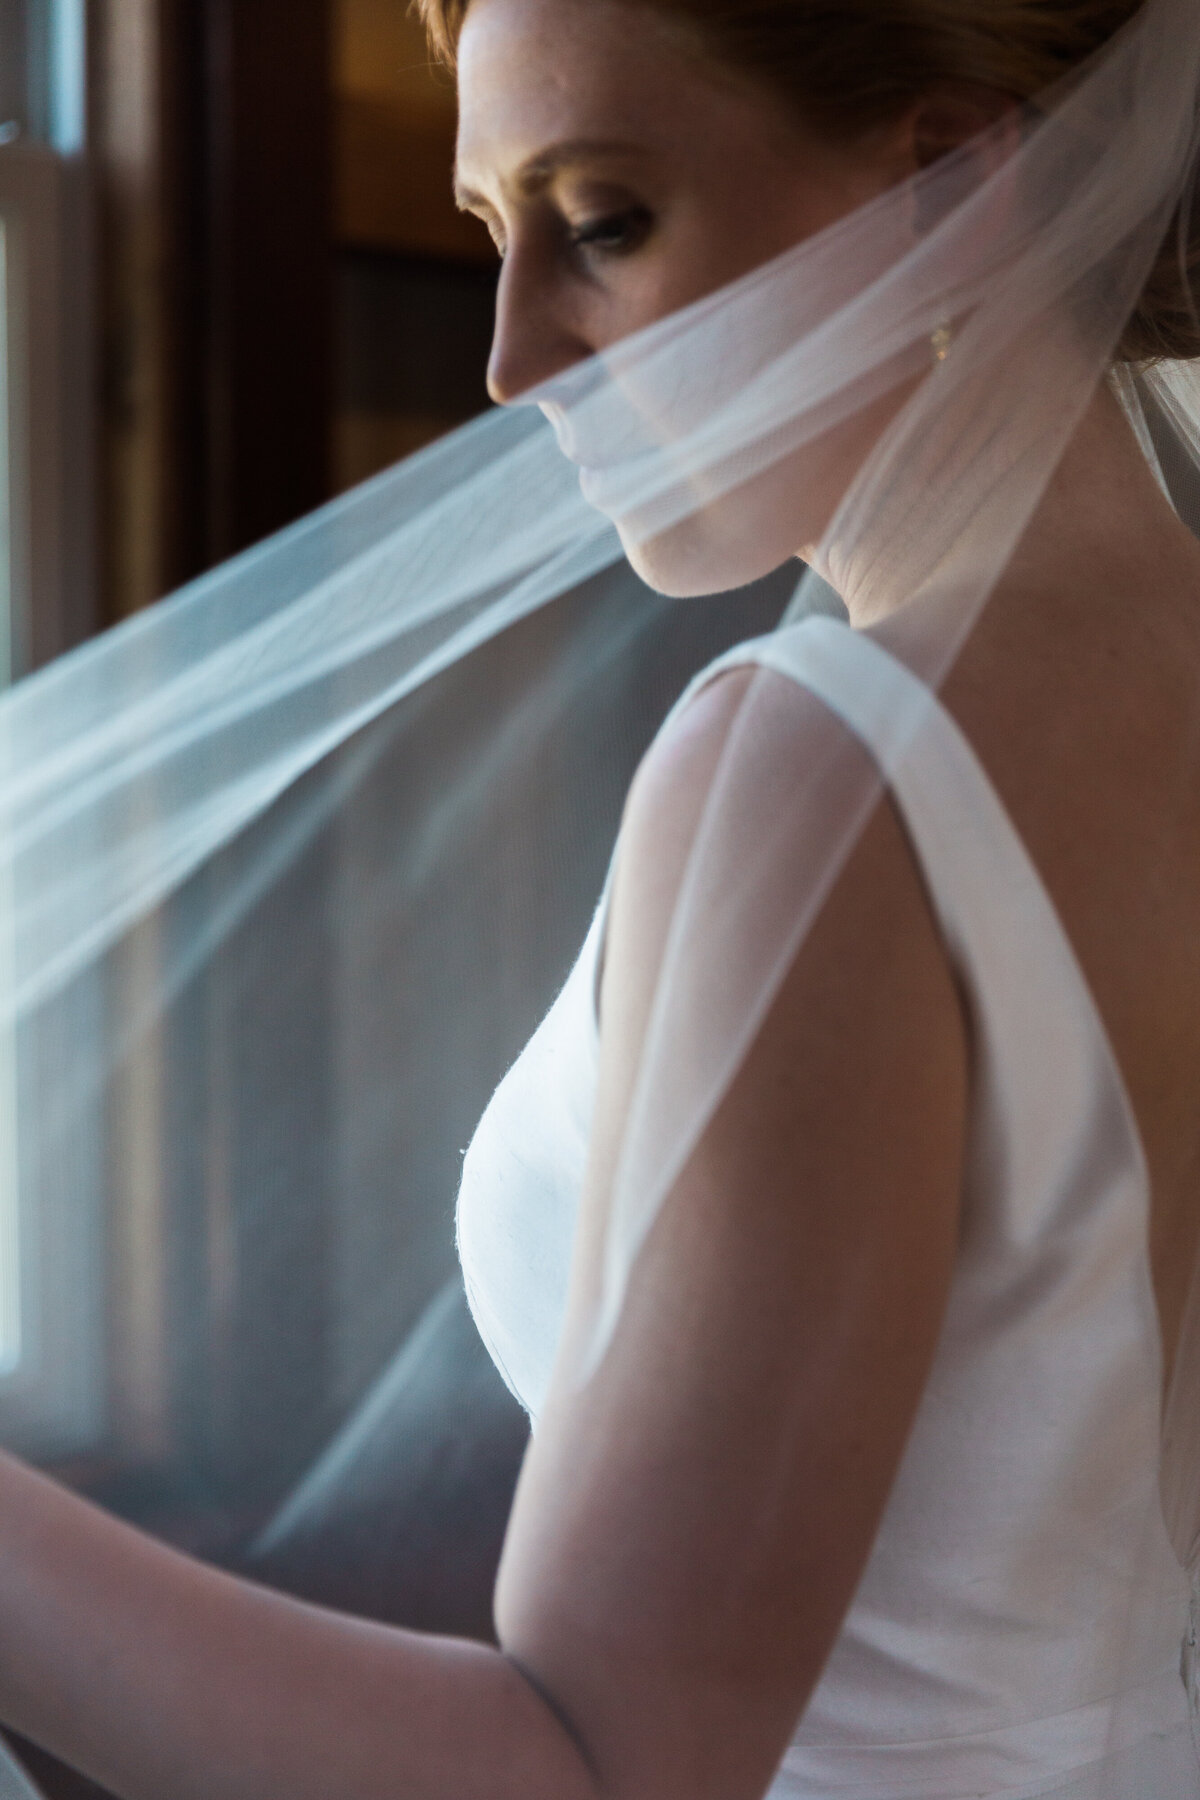 Close-up photo of a bride's veil